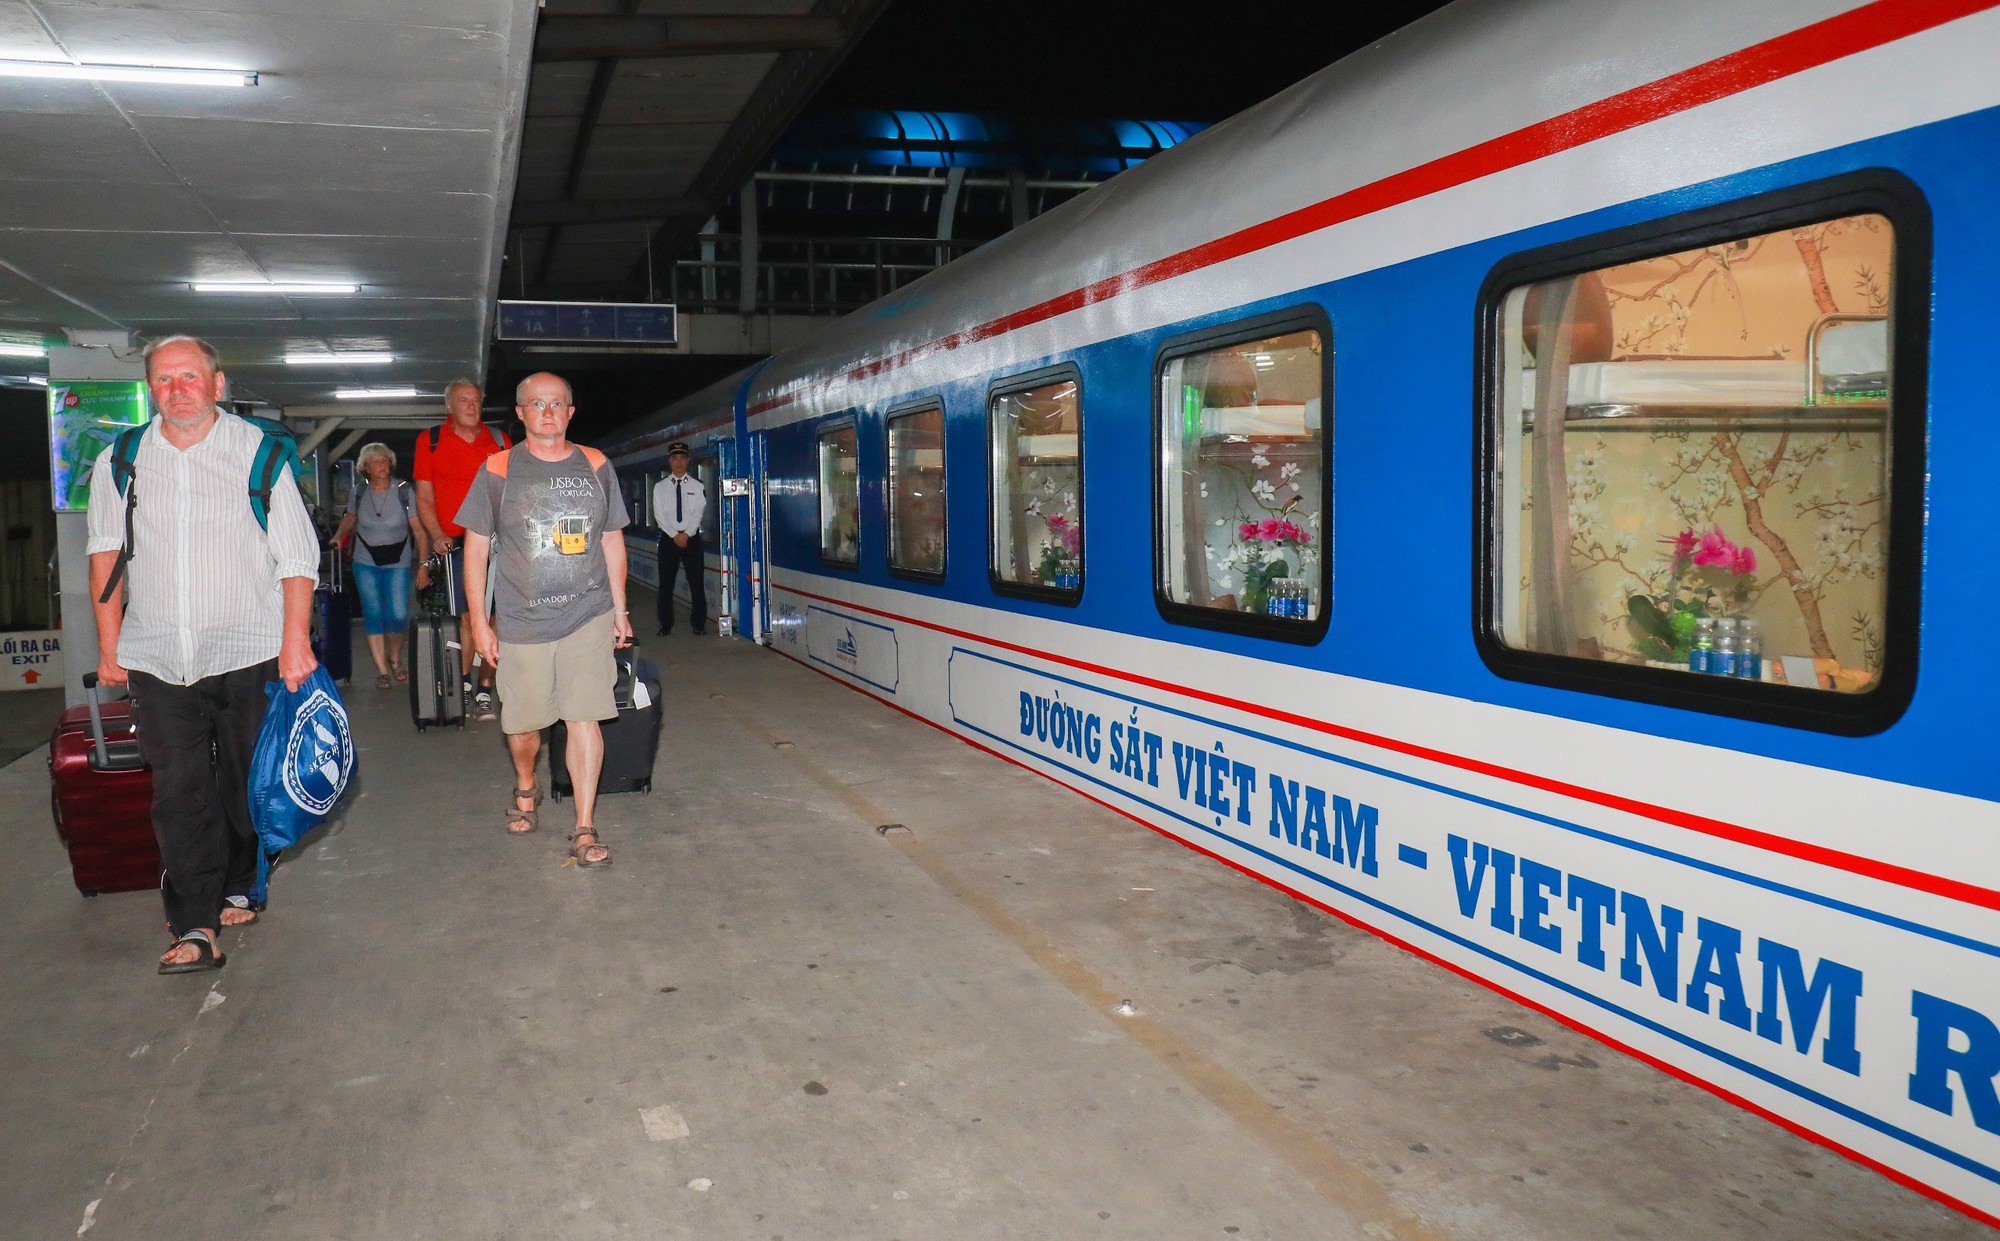 Hành khách hào hứng trải nghiệm tàu như khách sạn Hà Nội - Đà Nẵng - Ảnh 2.